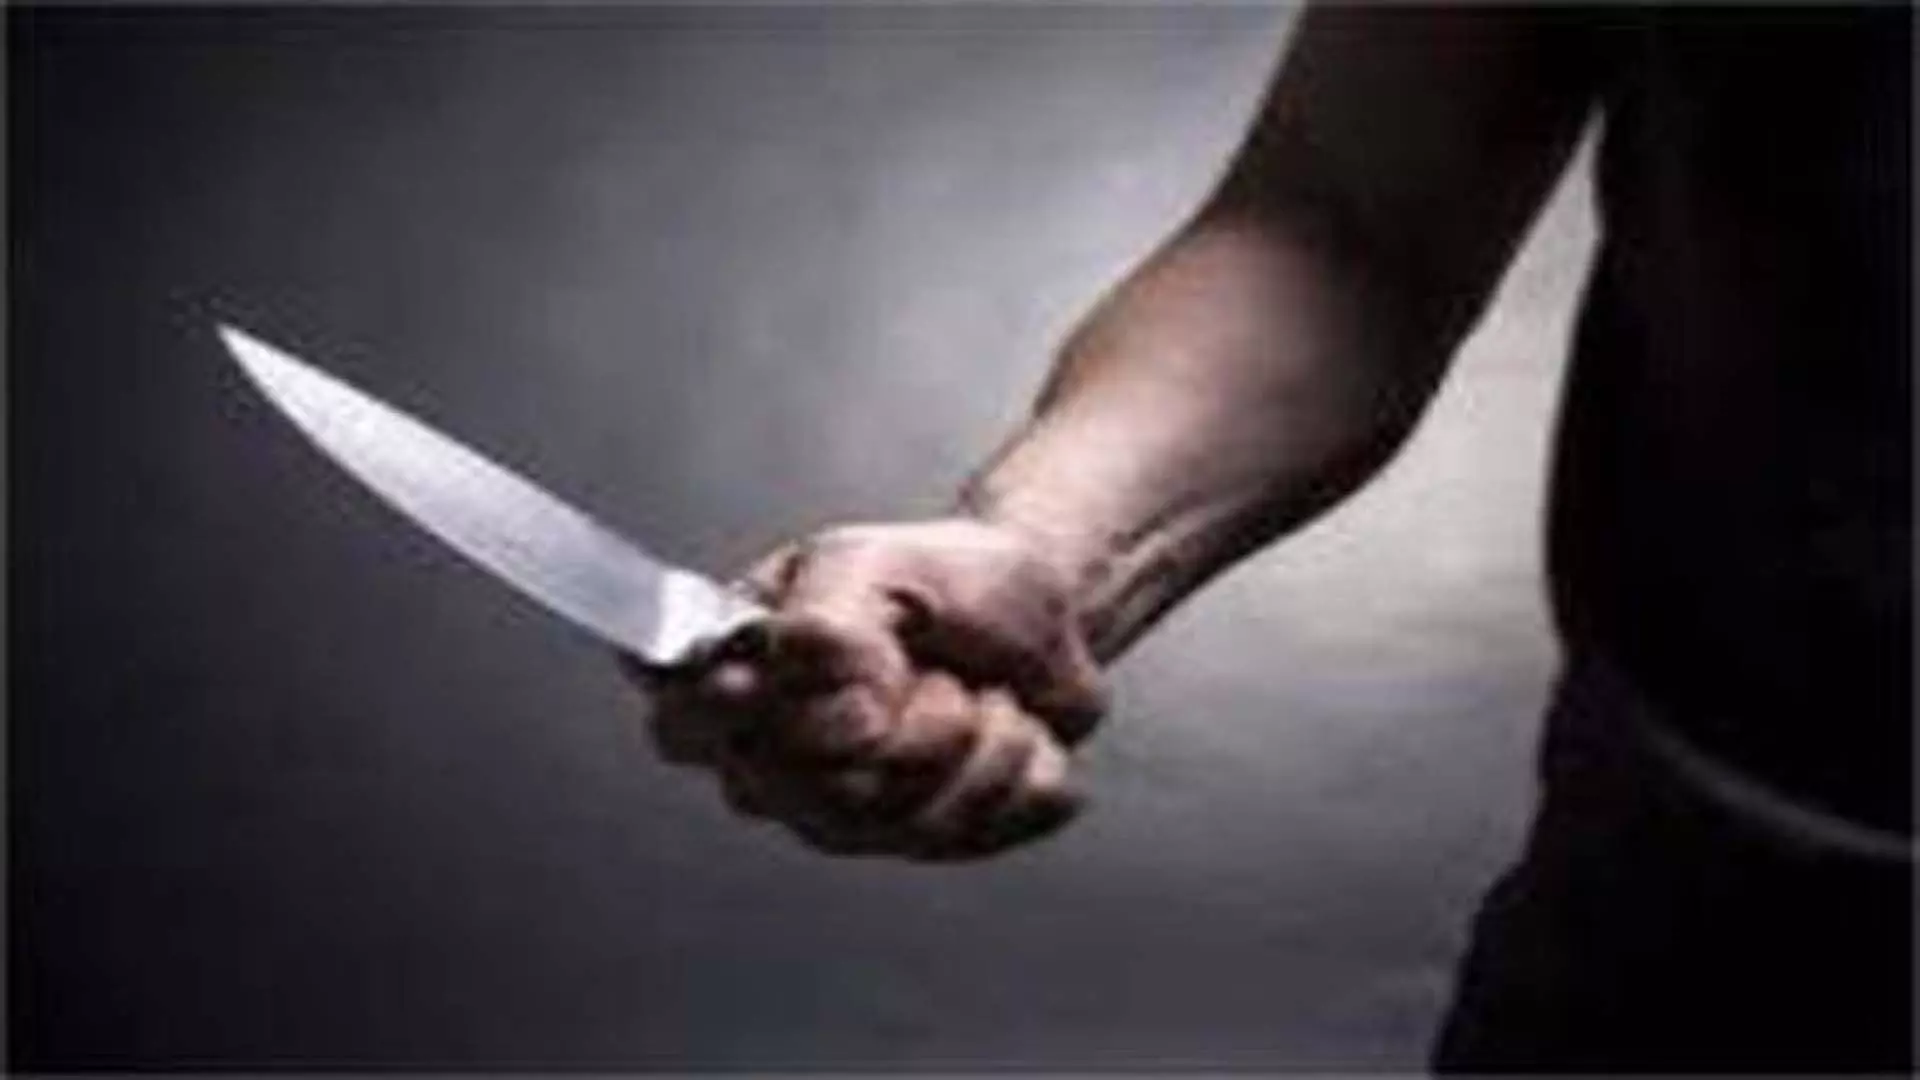 दिल्ली: 22 वर्षीय छात्र को एक व्यक्ति ने चाकू मारा